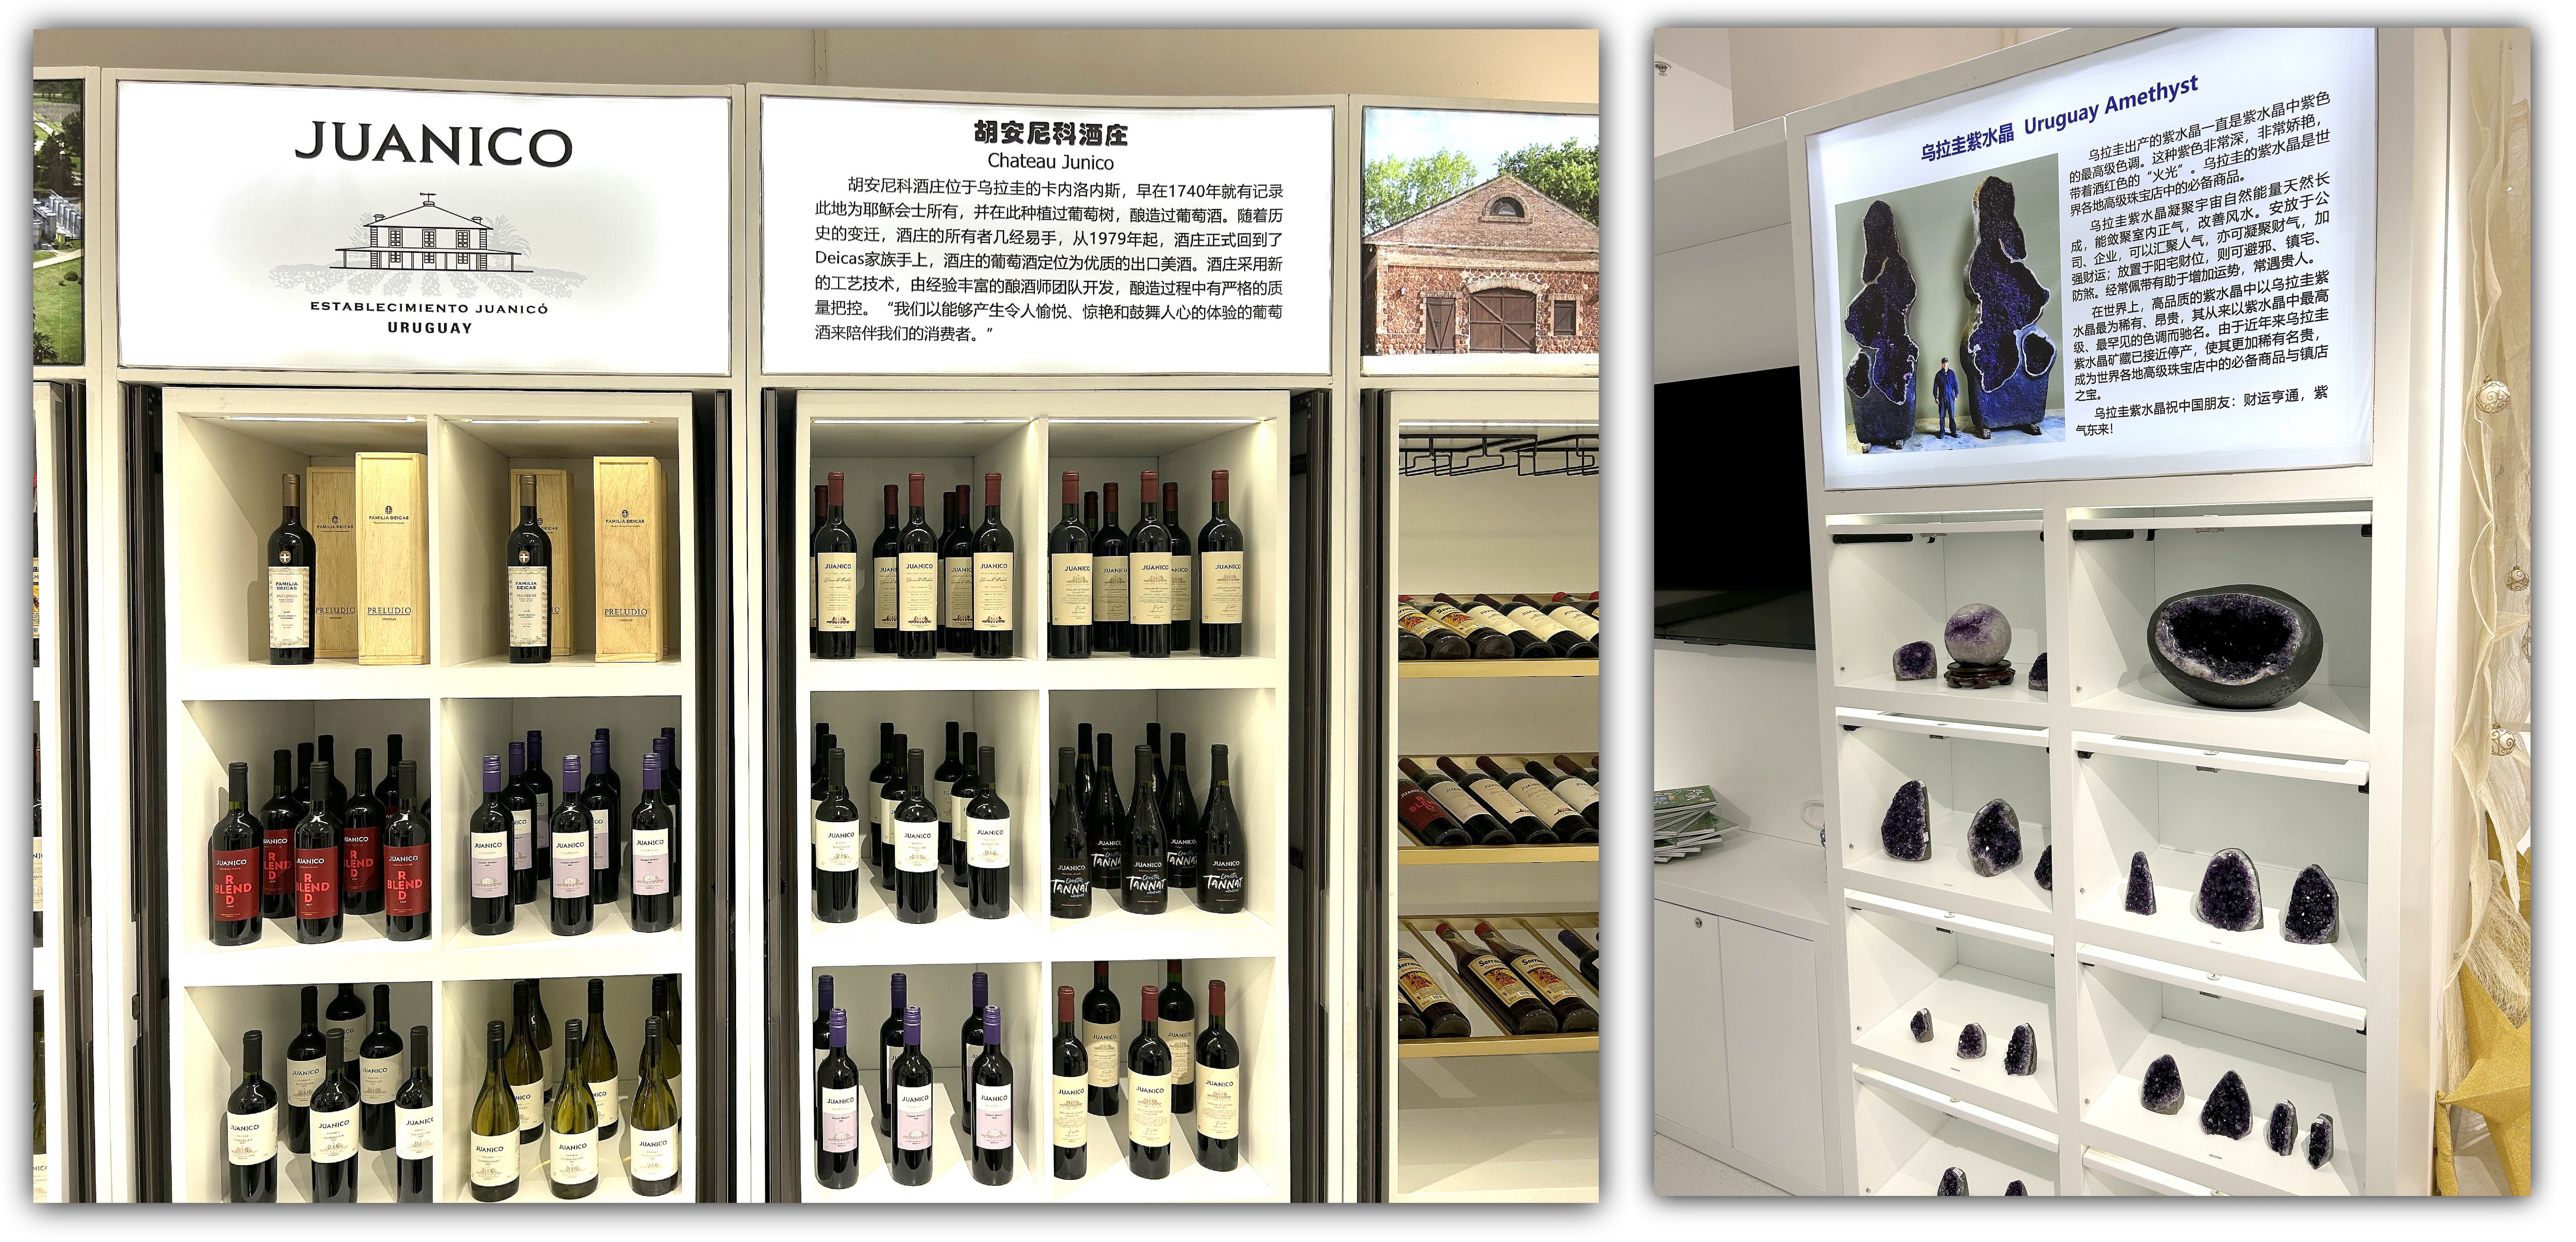 02 - Nuevo local permanente con productos uruguayos en el Oeste de China.